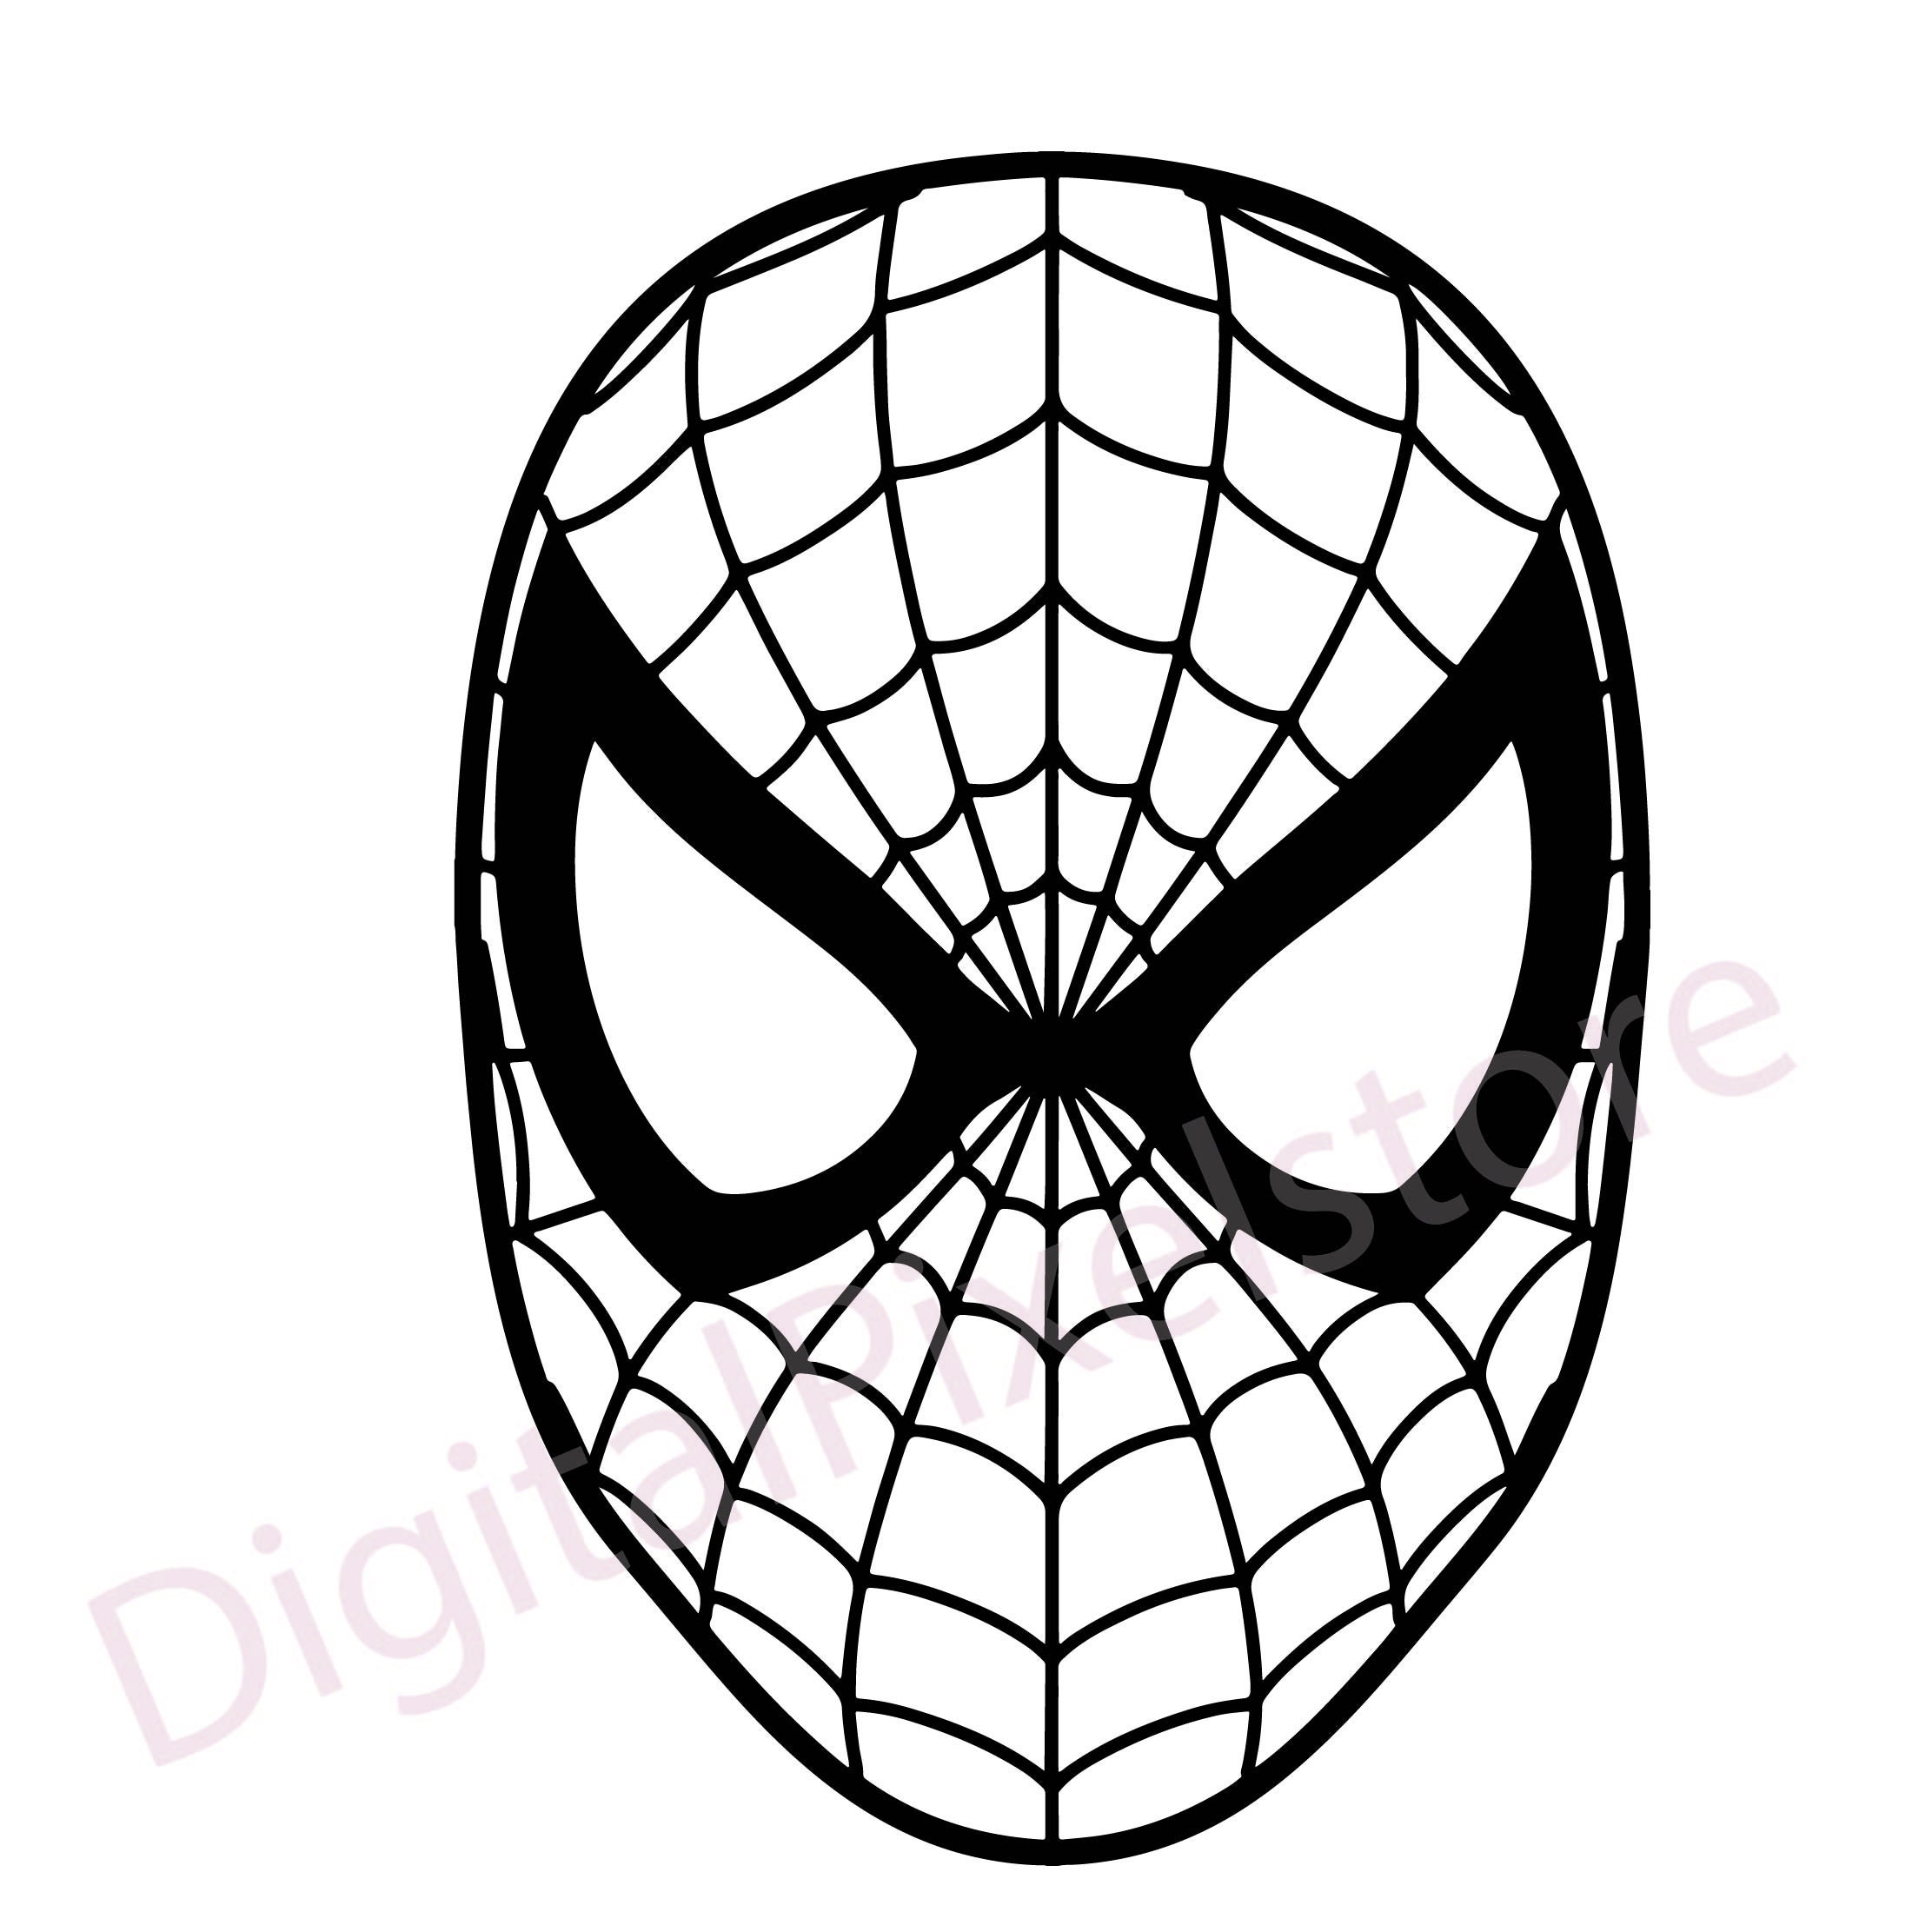 Spiderman svg bundleSpider man svgspiderman silhouette | Etsy